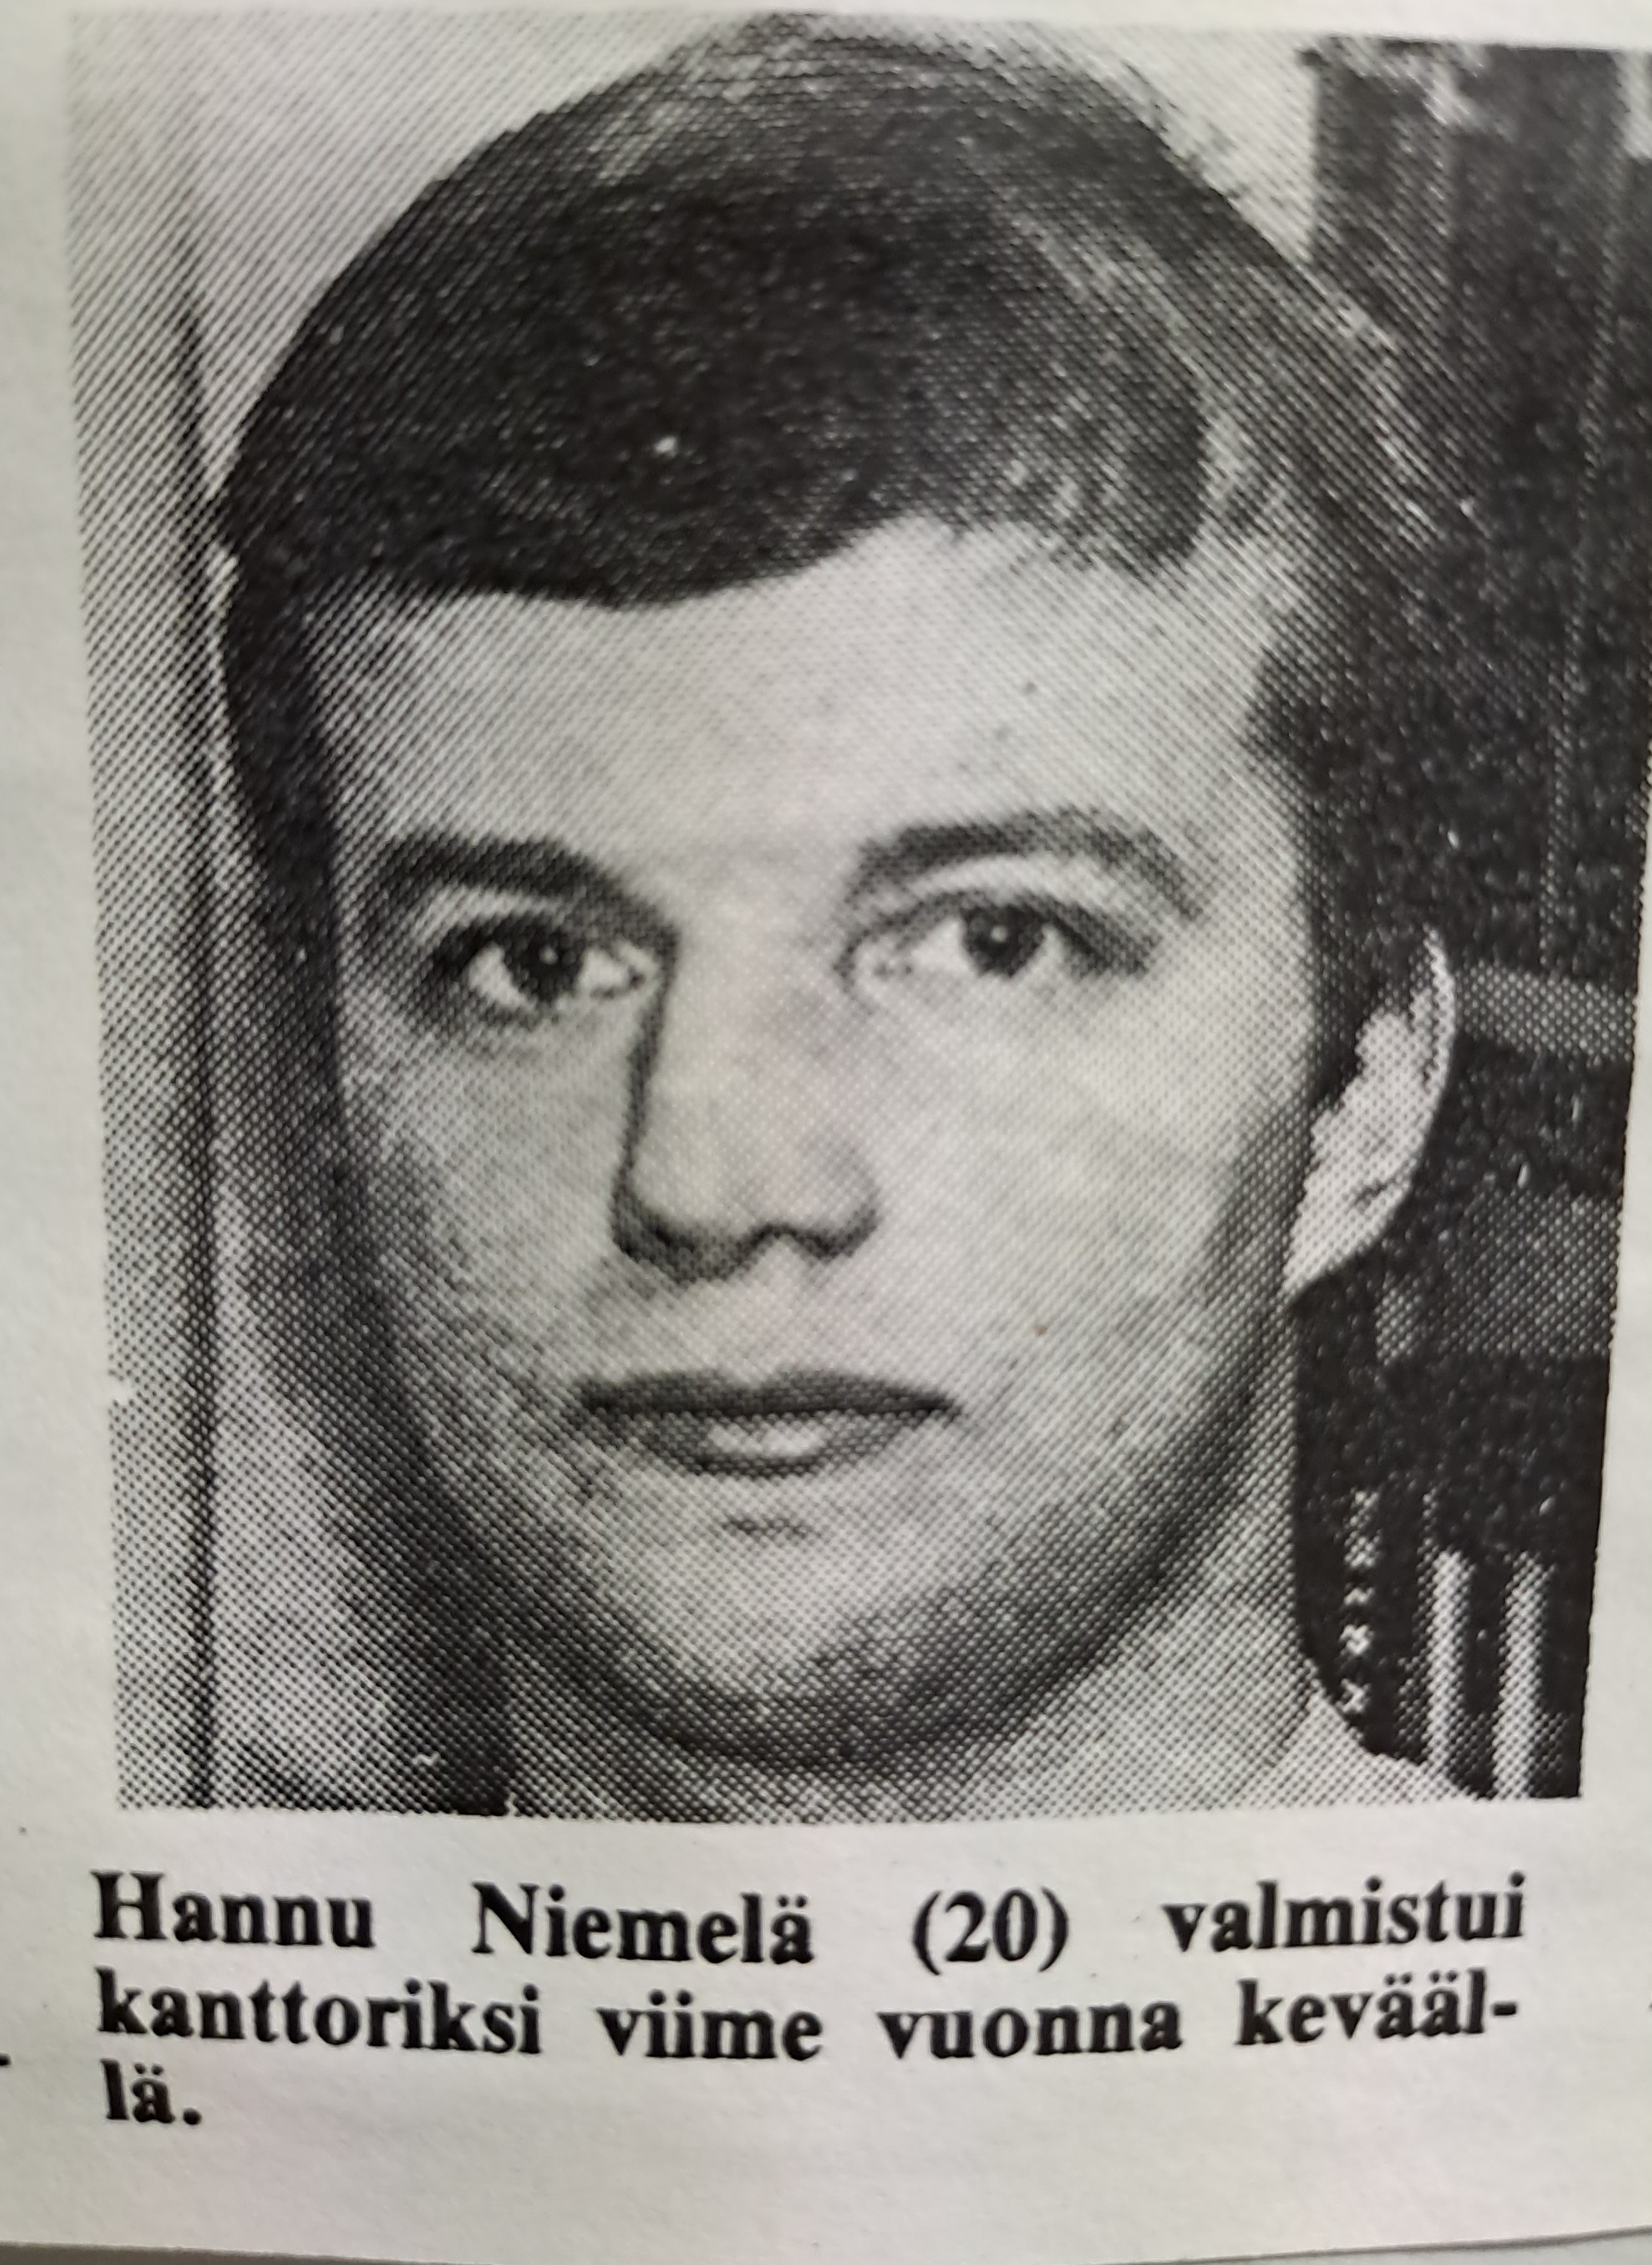 Hannu tuli Haukiputaan kanttoriksi 20 vuotiaana.